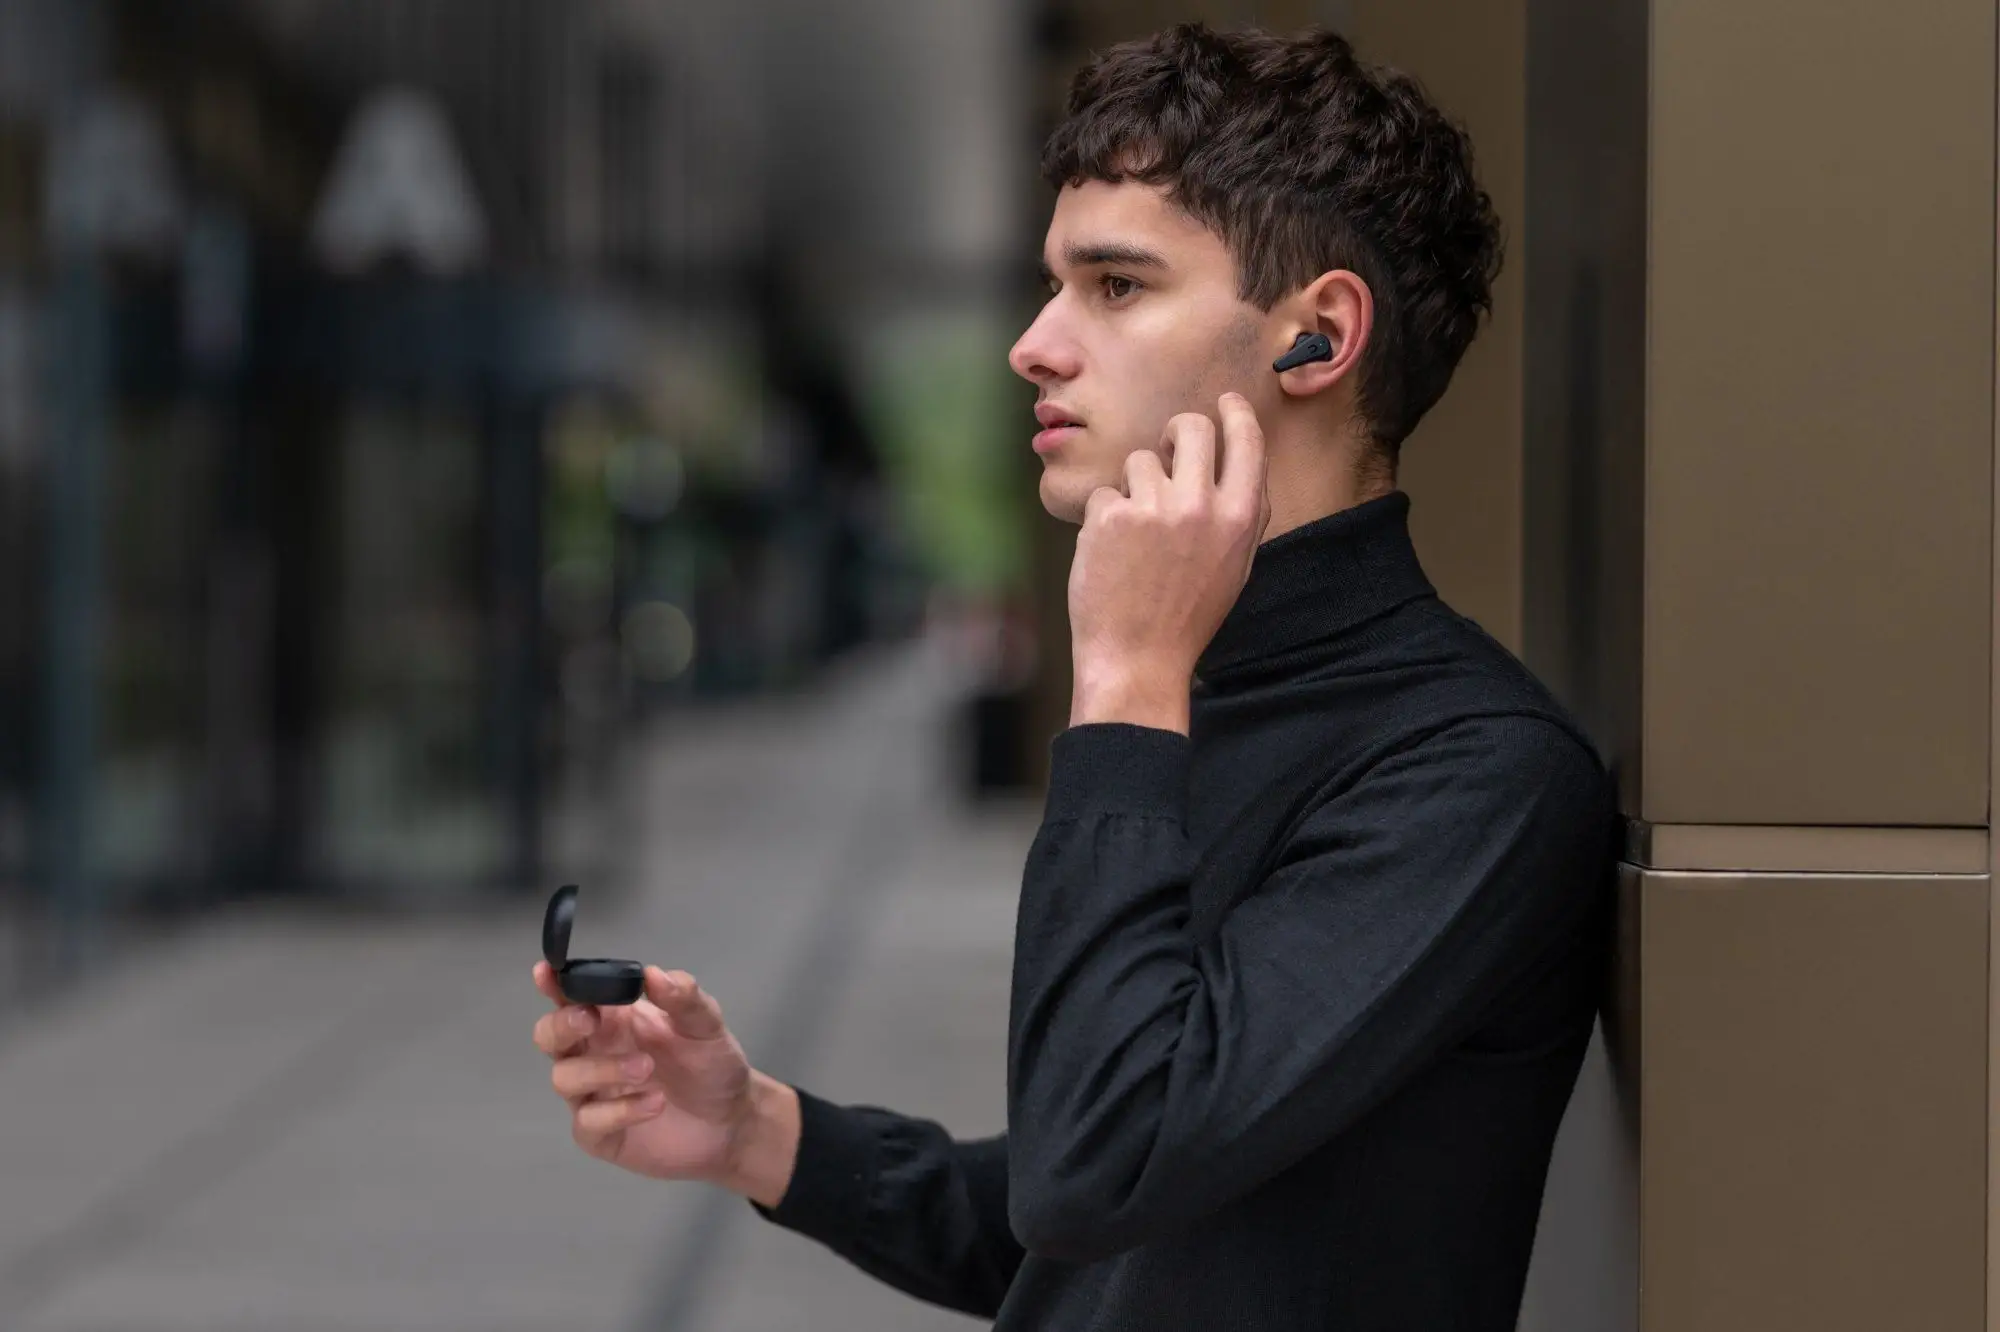 Bezdrôtové In-Ear slúchadlá Niceboy Pins 3 ANC s podporou Bluetooth 5.1 sú navrhnuté tak, aby vás nijako neobmedzovali pri pohybe či pri iných aktivitách.